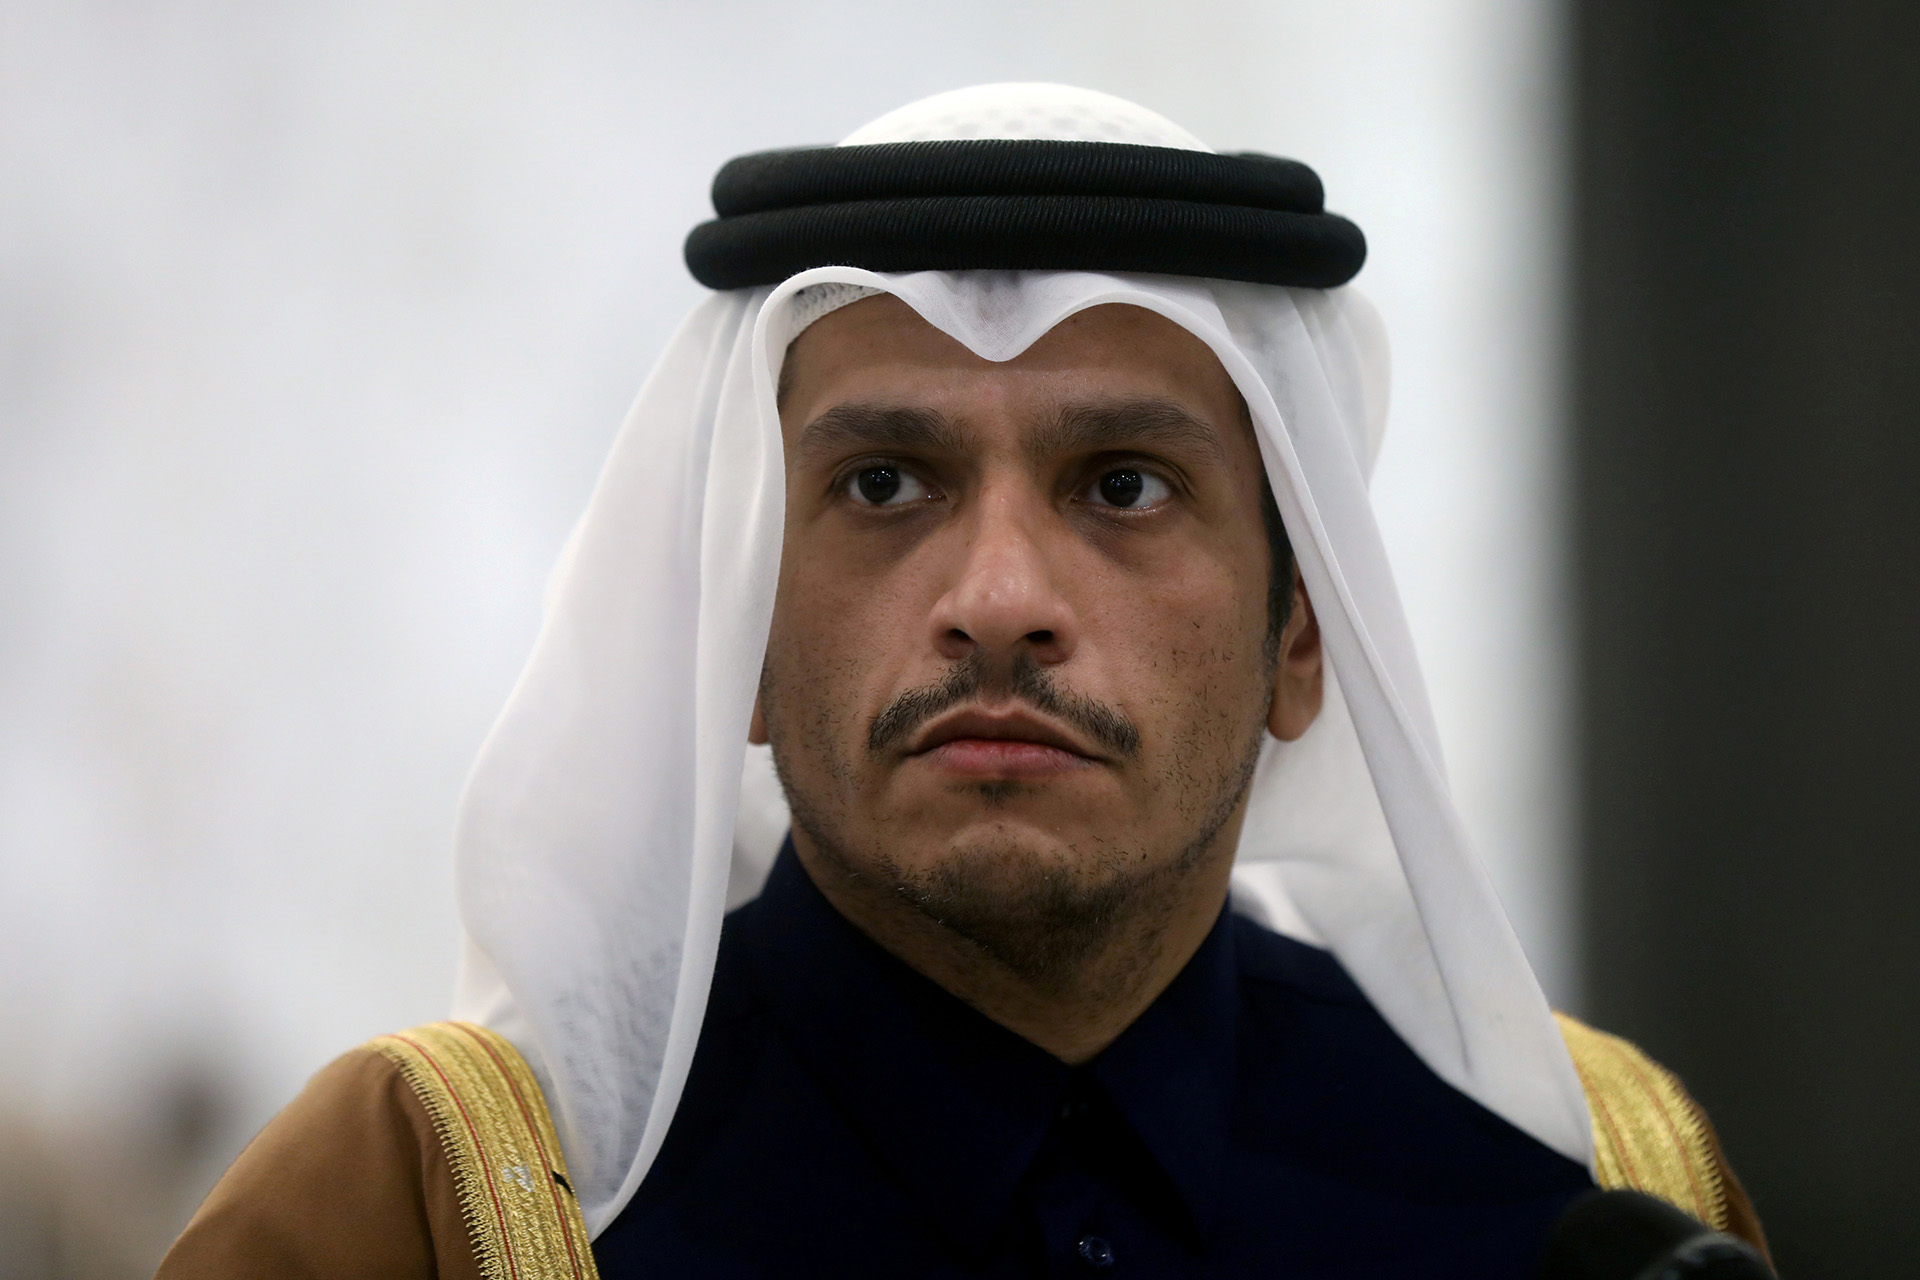 Ce sera l’un des tournois les plus réussis.  Le ministre des Affaires étrangères du Qatar : Certains n’acceptent pas que le pays arabe organise la Coupe du monde, pratiquant le « double standard » |  politique